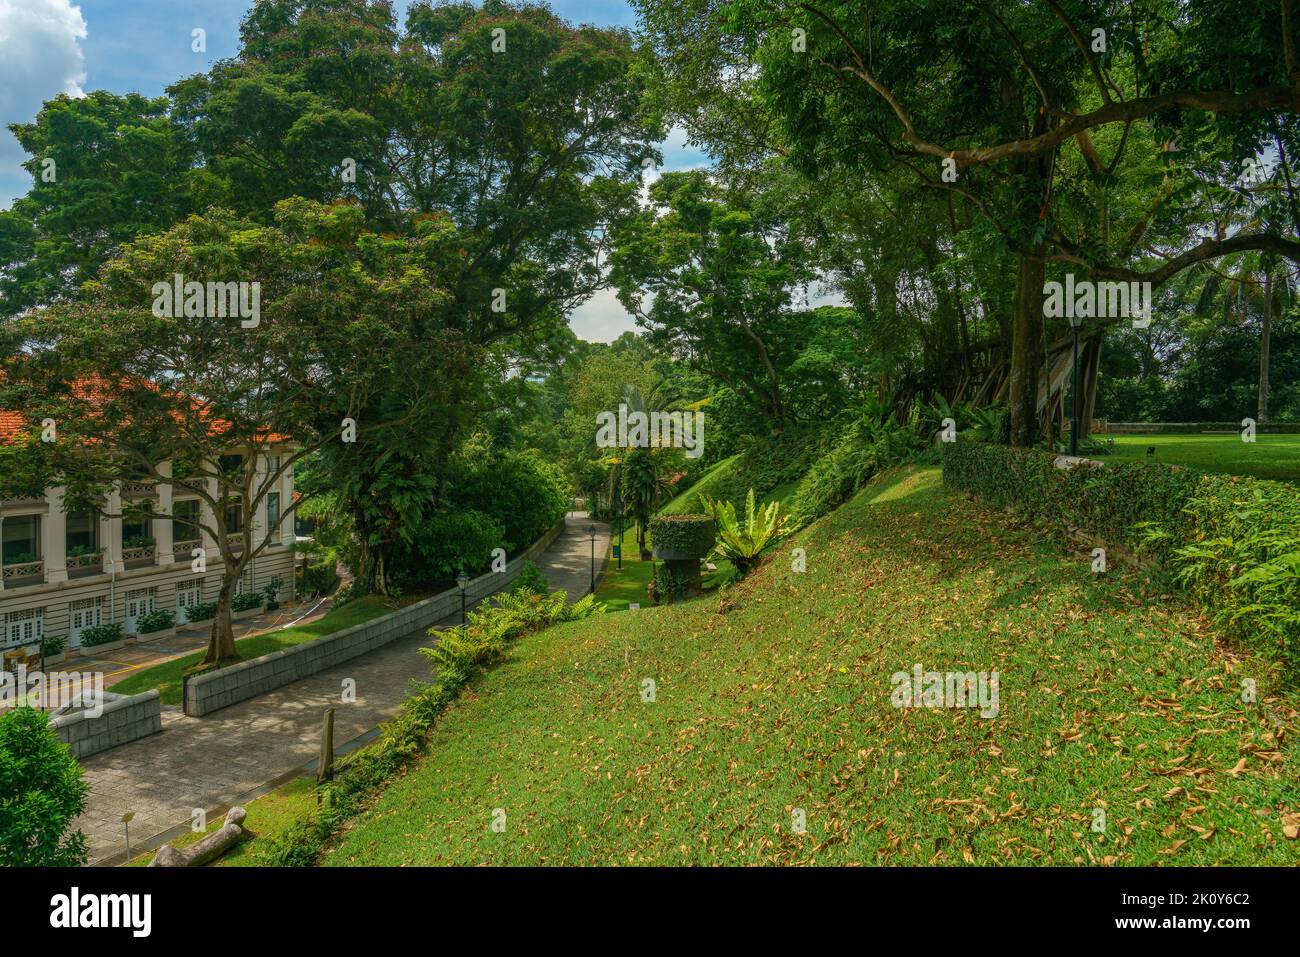 Singapur, 18. Mai 2018: Sehr grüner Park mit einem Gebäude und Gehweg durch das Grün Stockfoto